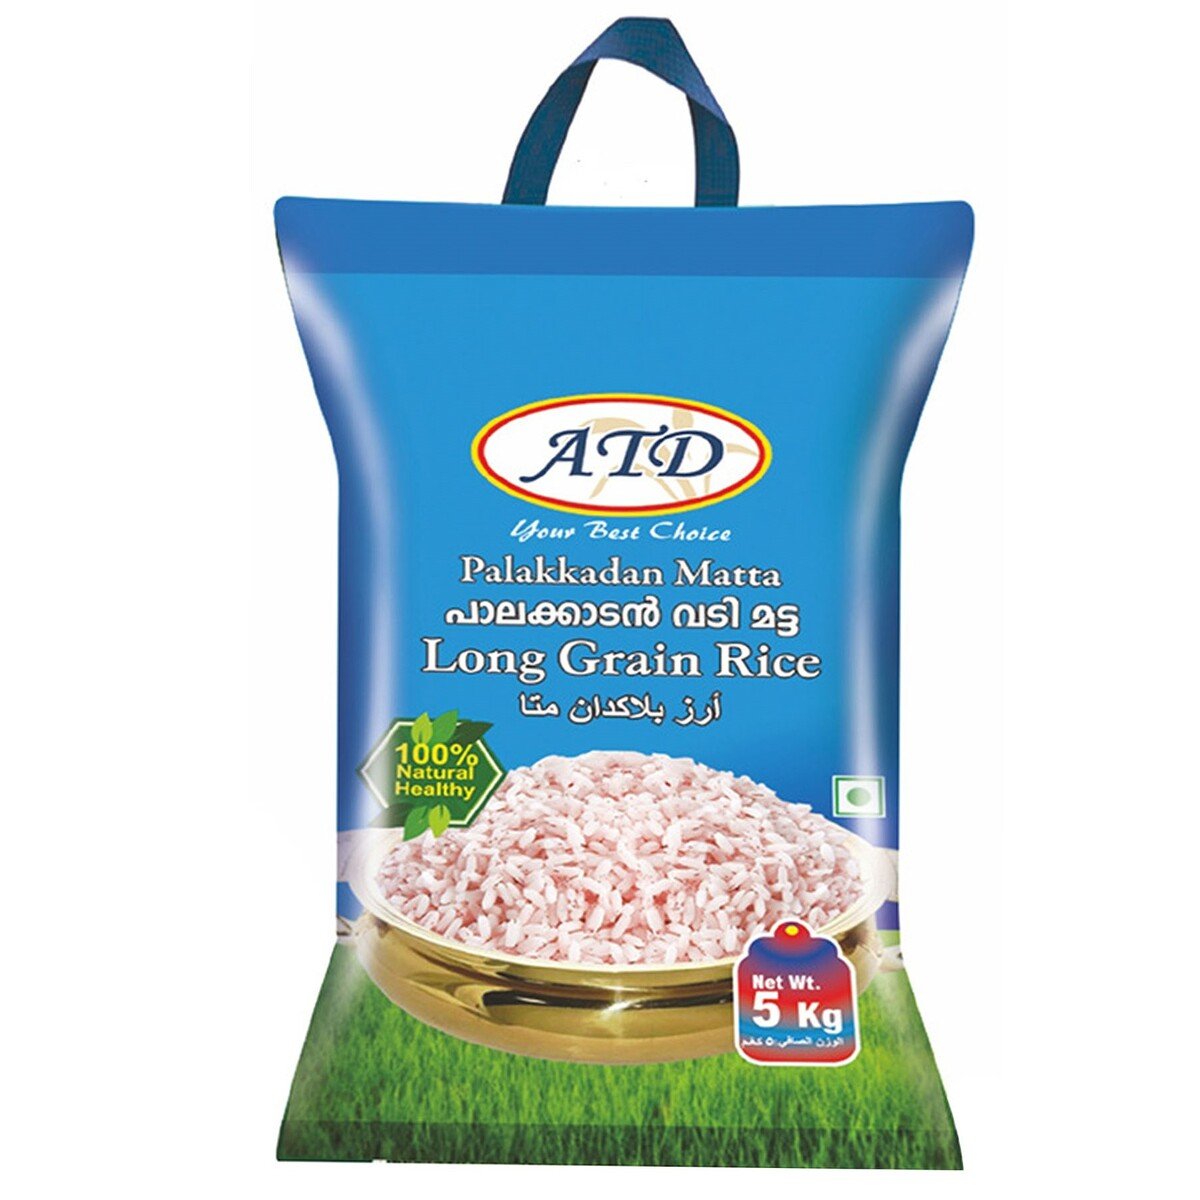 ATD Palakkadan Matta Long Grain Rice 5 kg